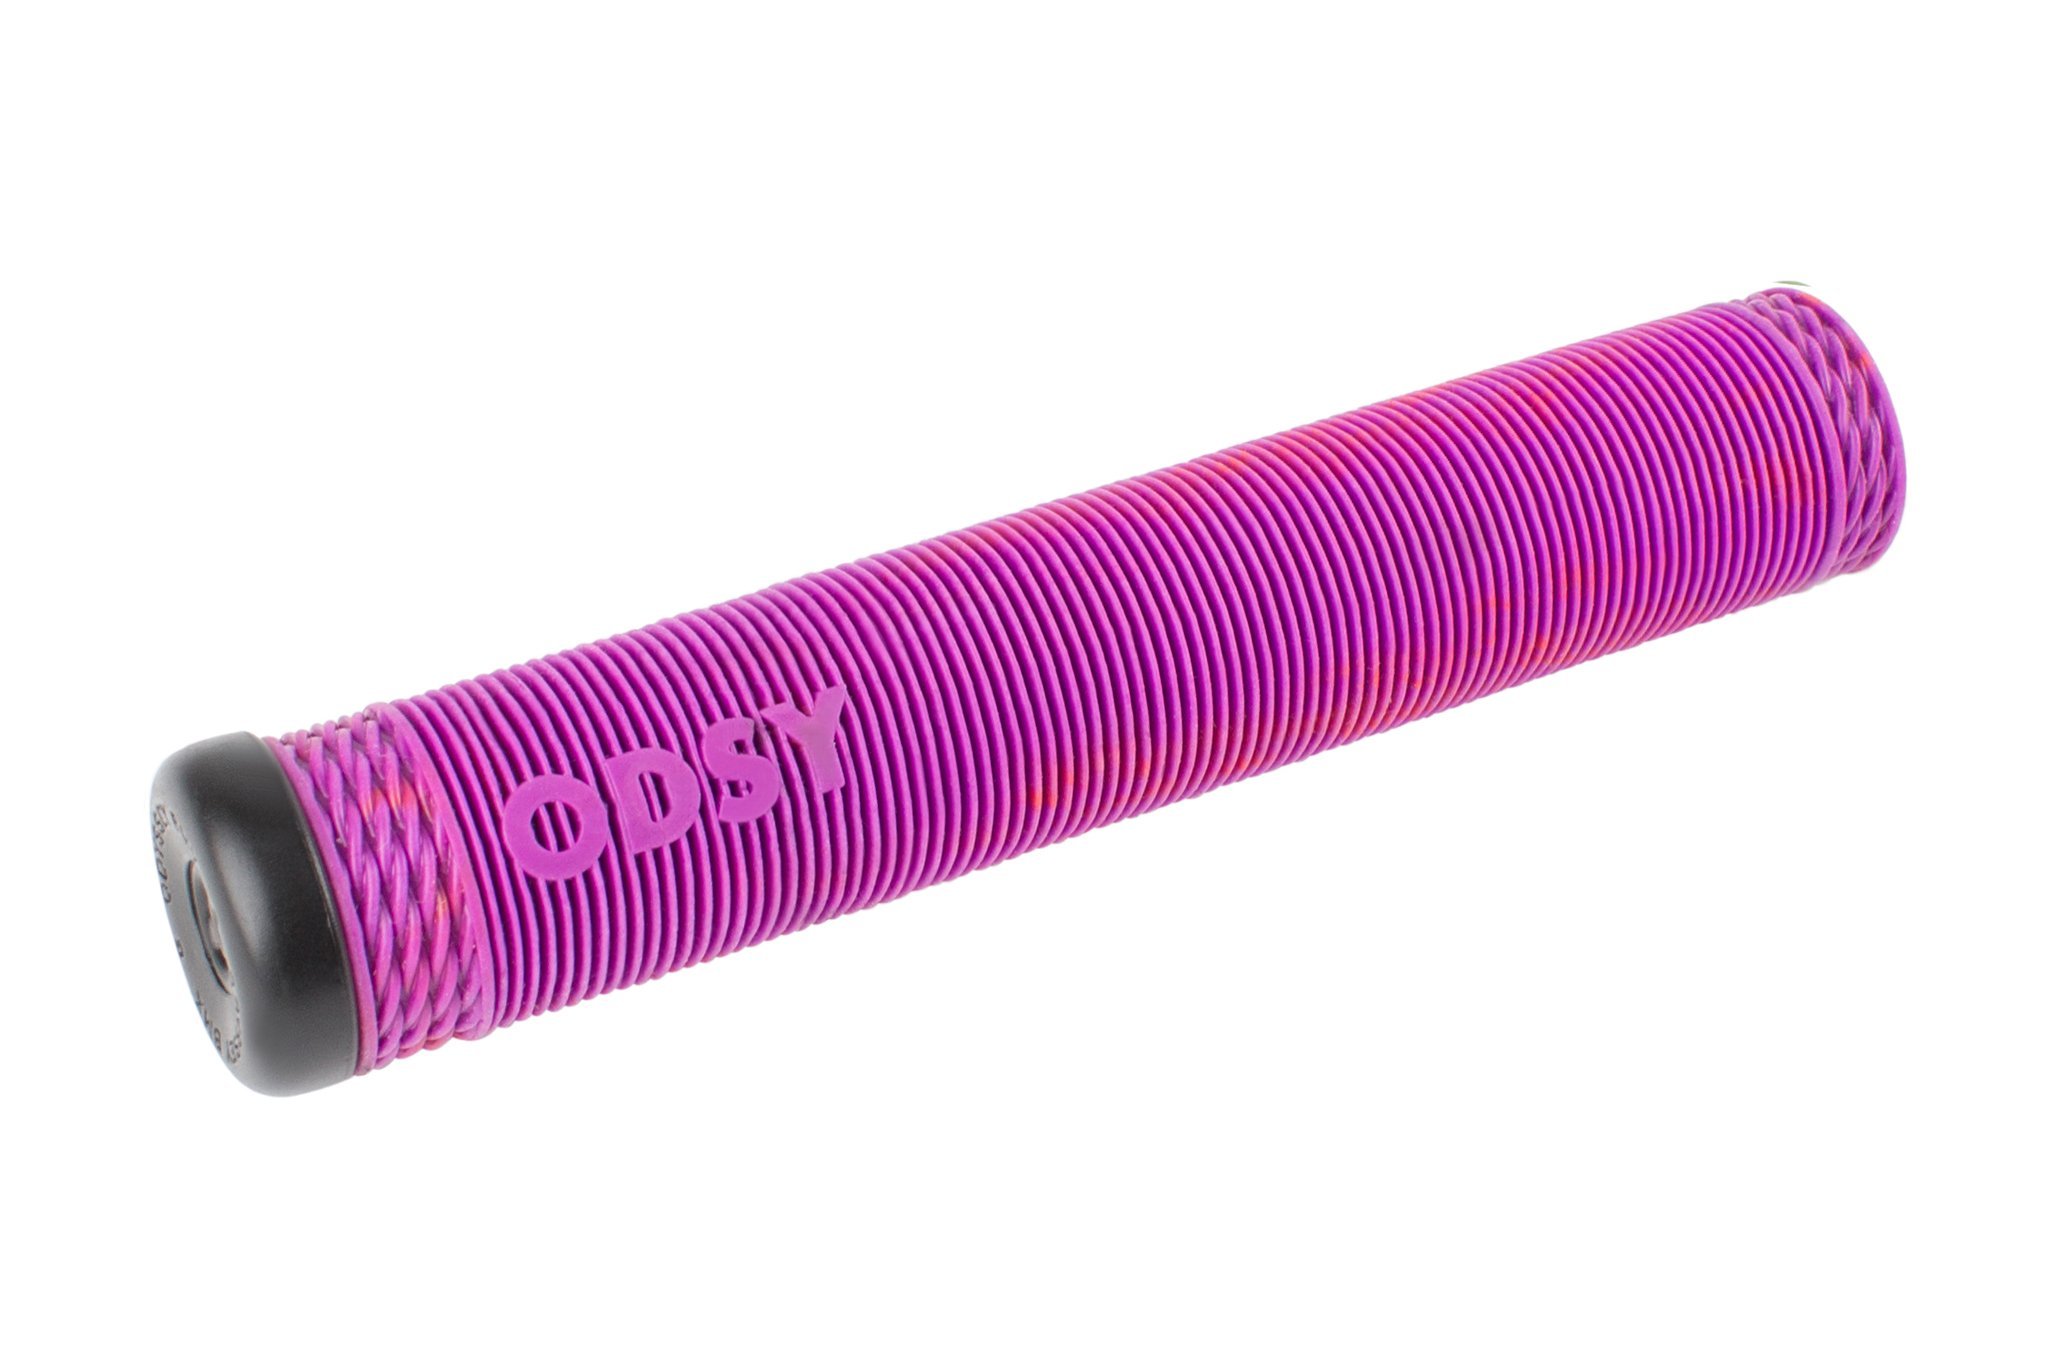 ODSY-Broc-Grip-Purple-Bright-Red-Swirl-3QS-Web_2048x2048